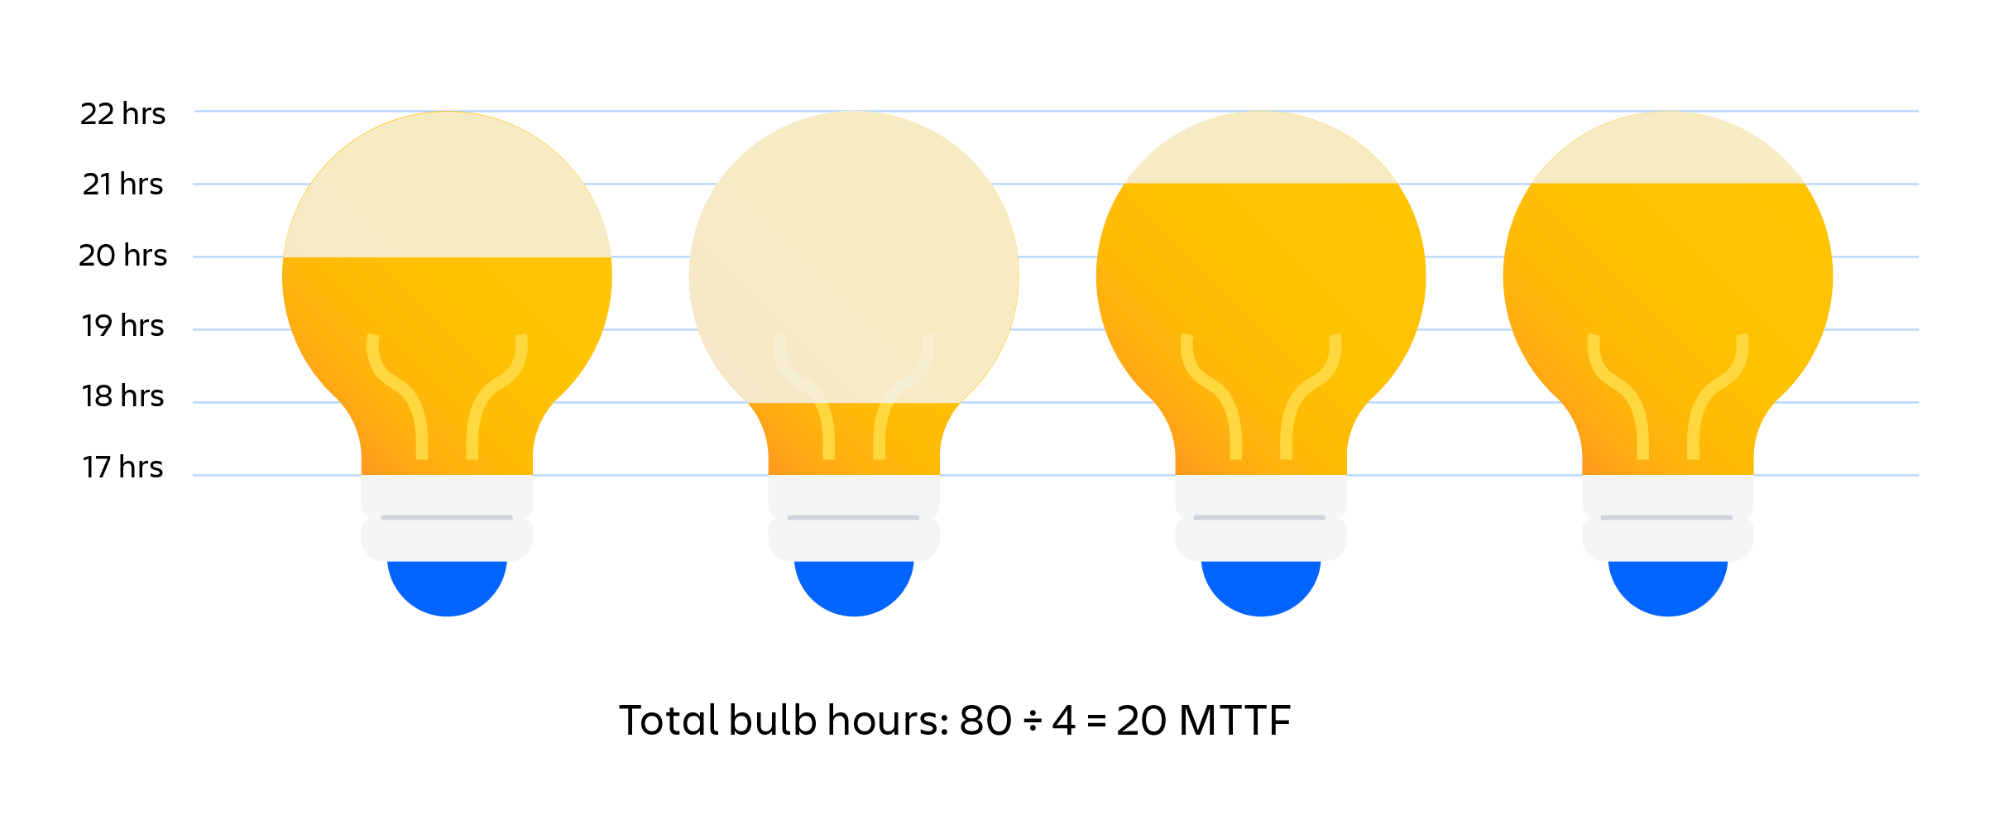 전구의 MTTF를 알아내는 시각적 예시입니다. 전구를 사용한 총 시간을 전구의 개수로 나눈 값이 MTTF(평균 장애 시간)입니다